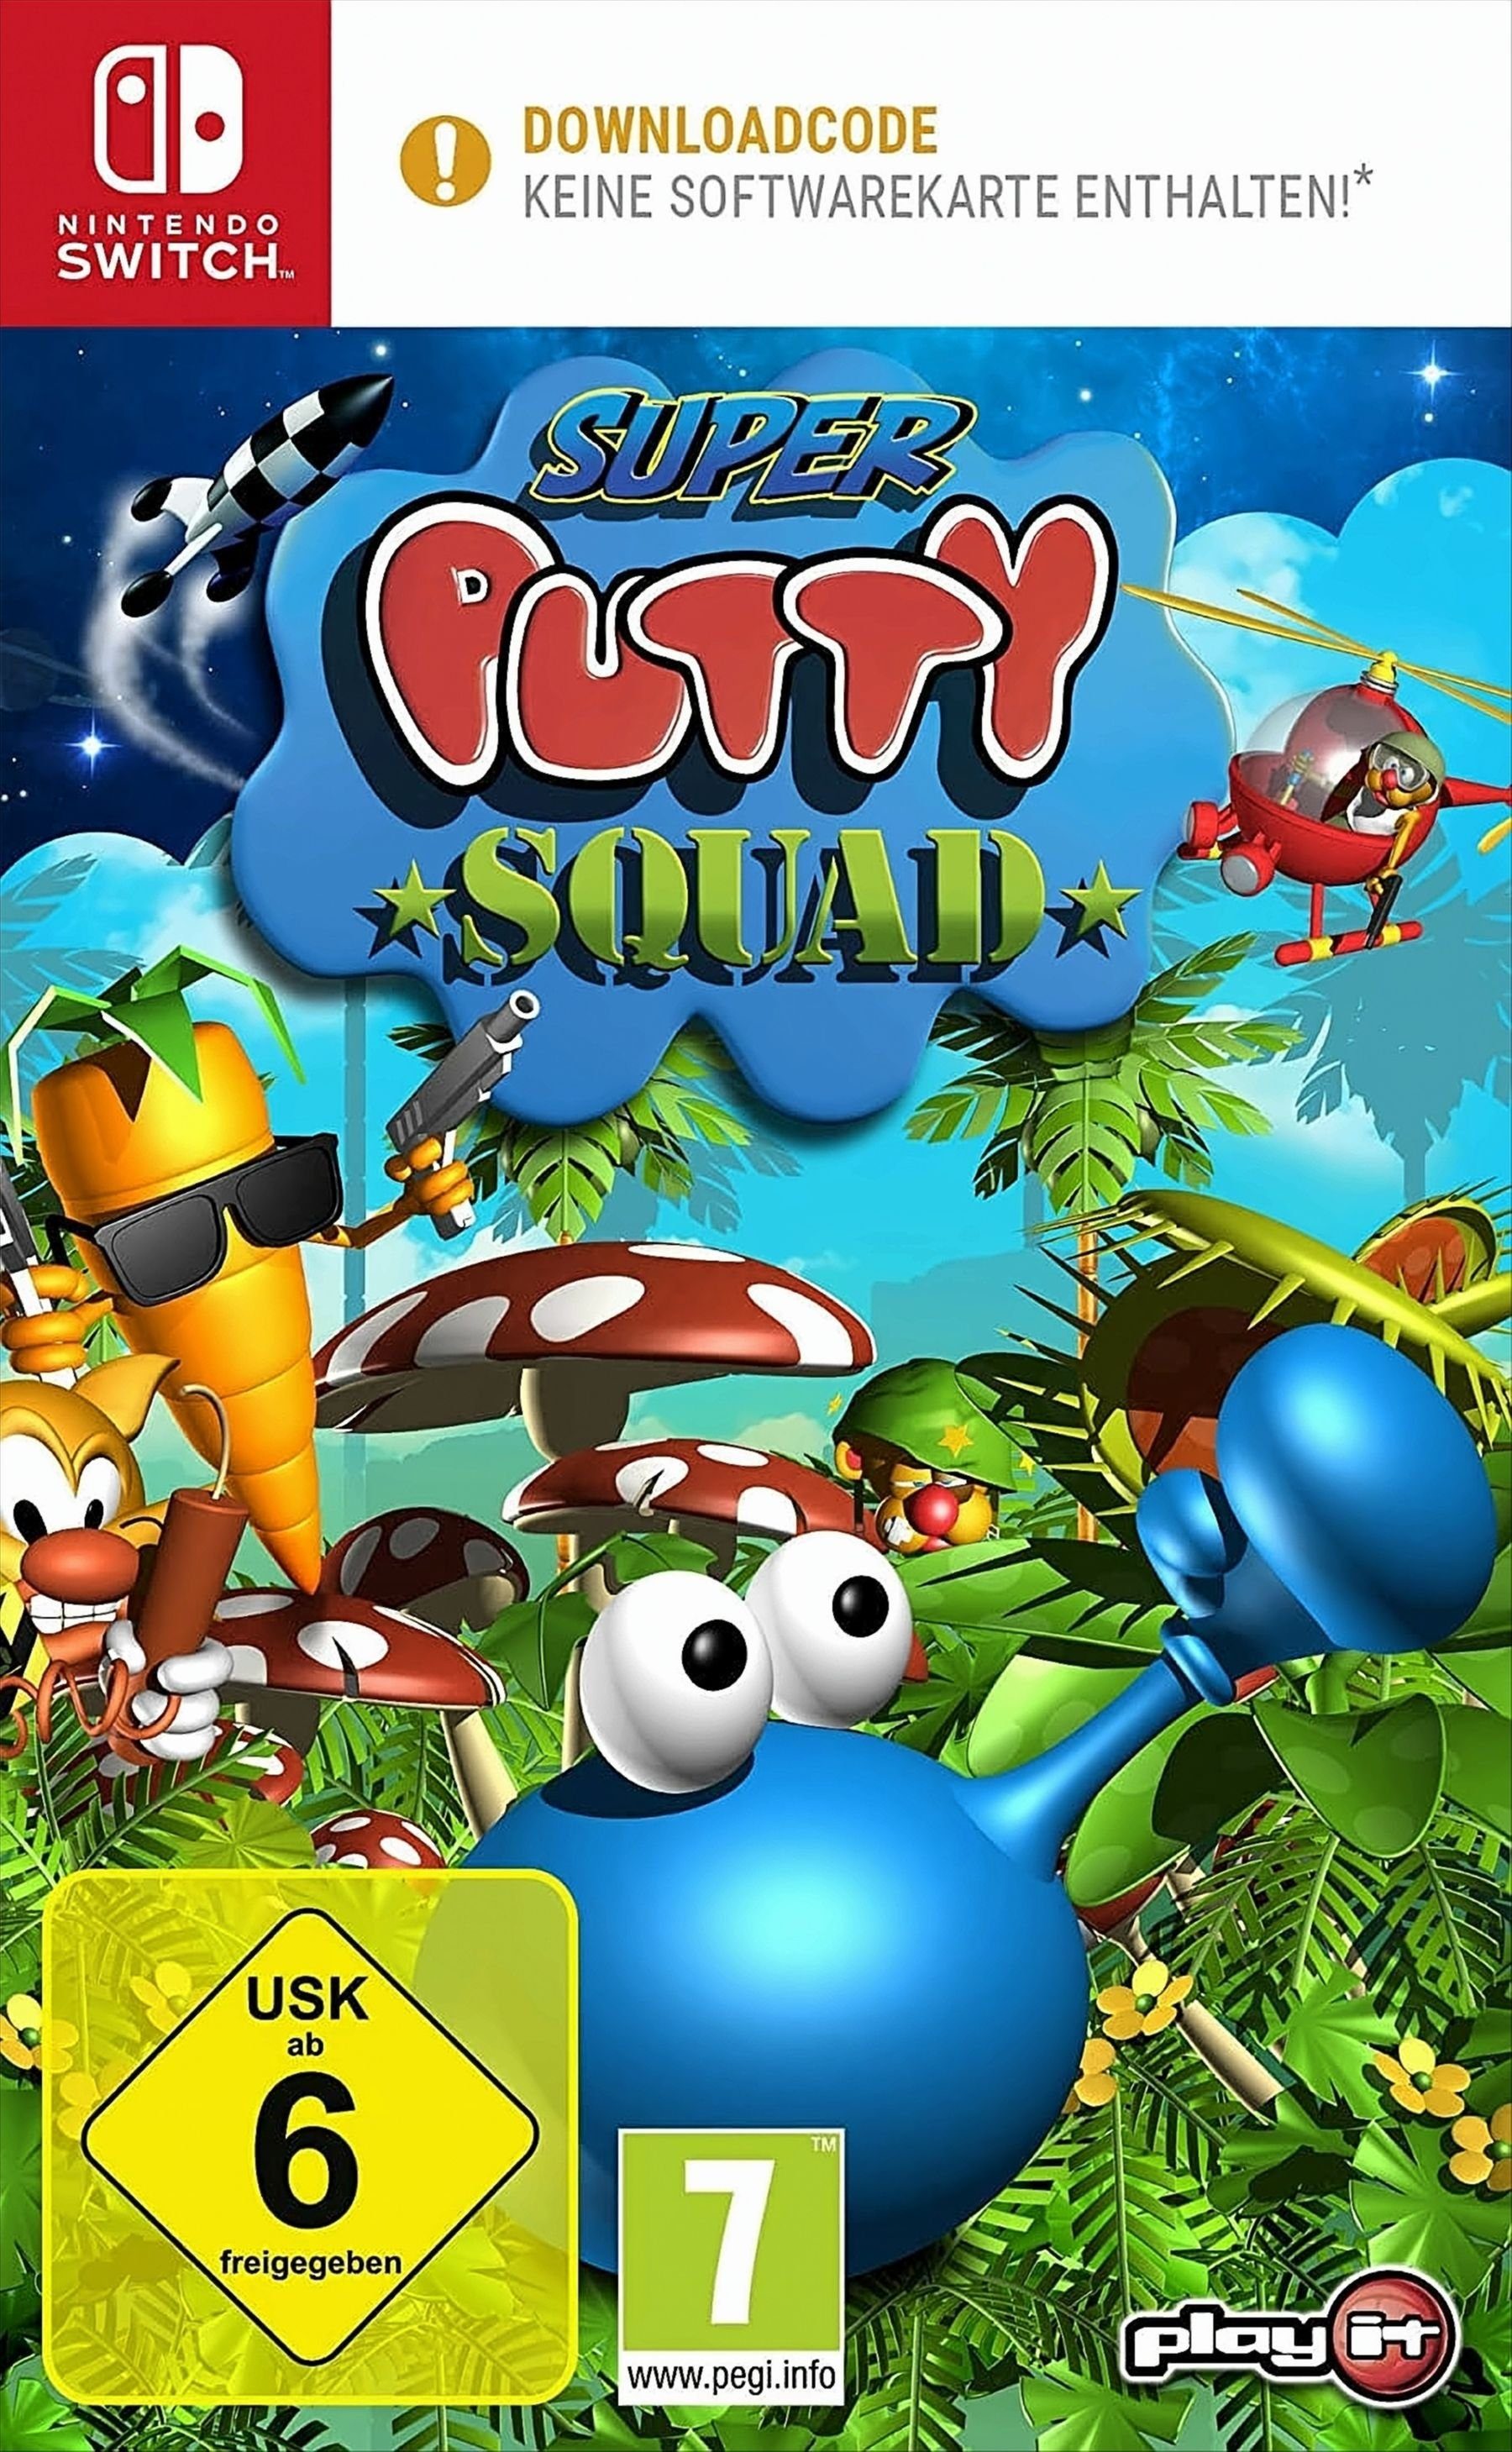 Putty Super a Box) Squad in Switch (Code Nintendo